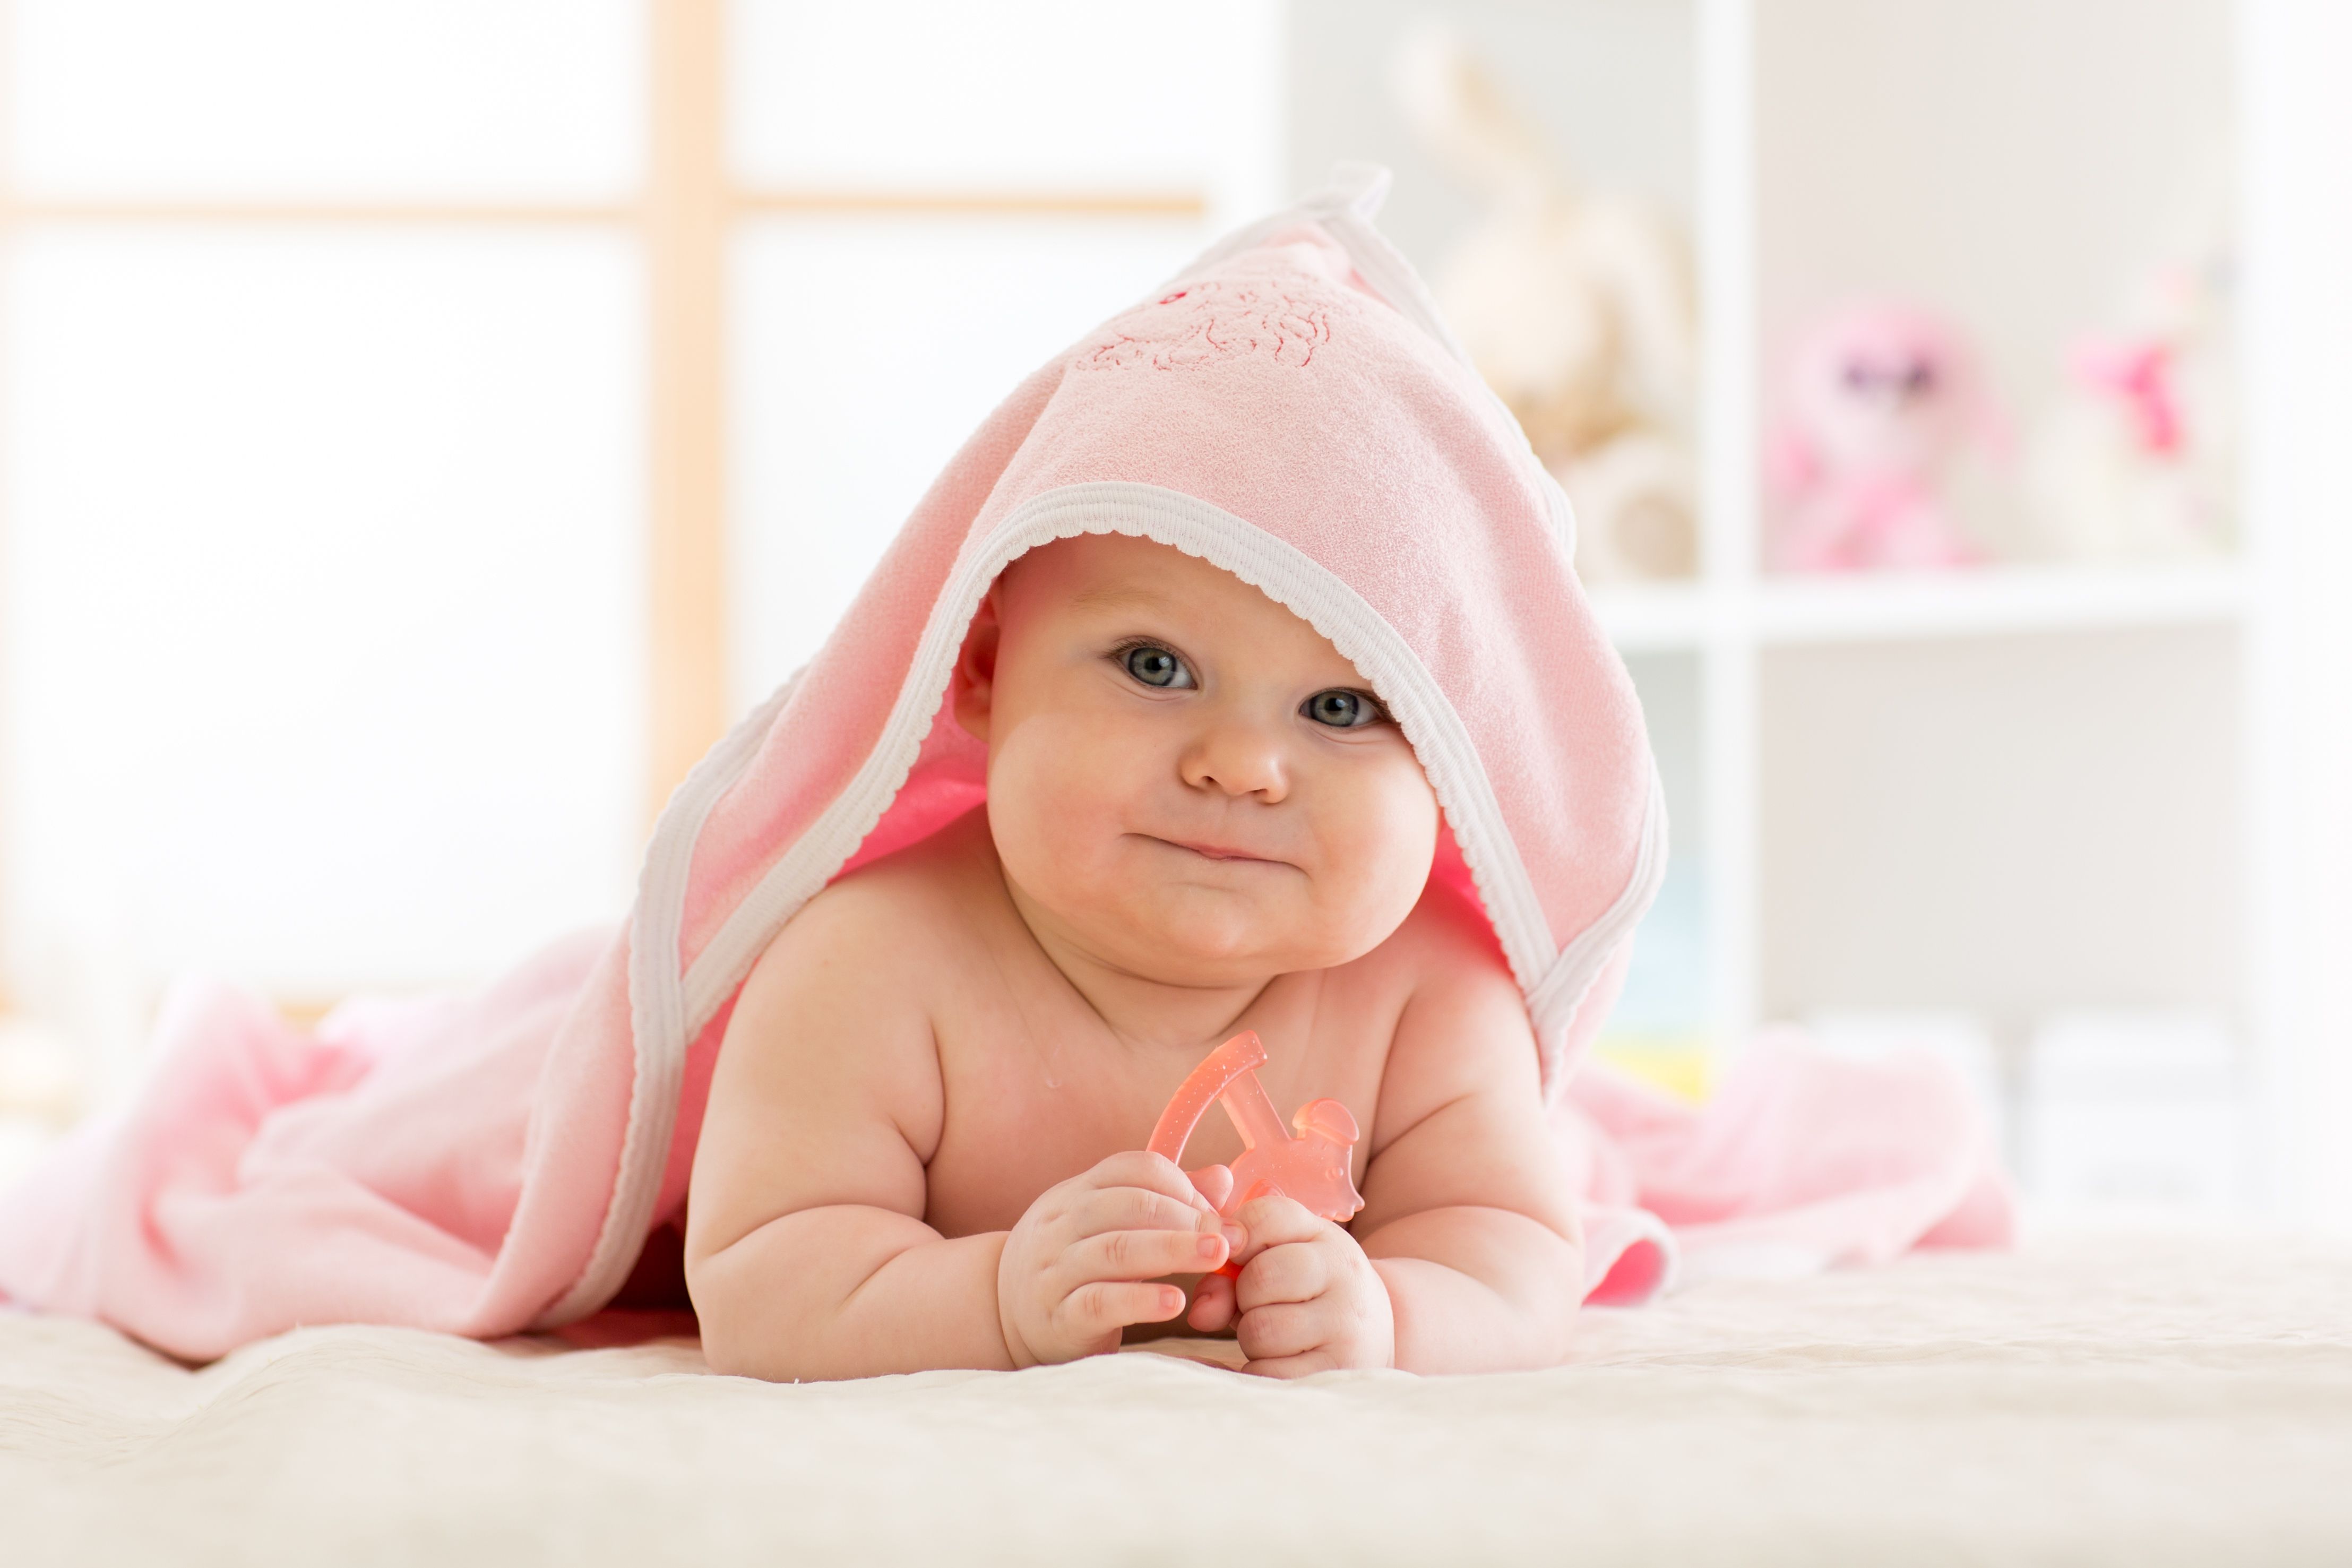 Choisir ses produits d'hygiène pour bébé : comment faire ? - Blog bébé